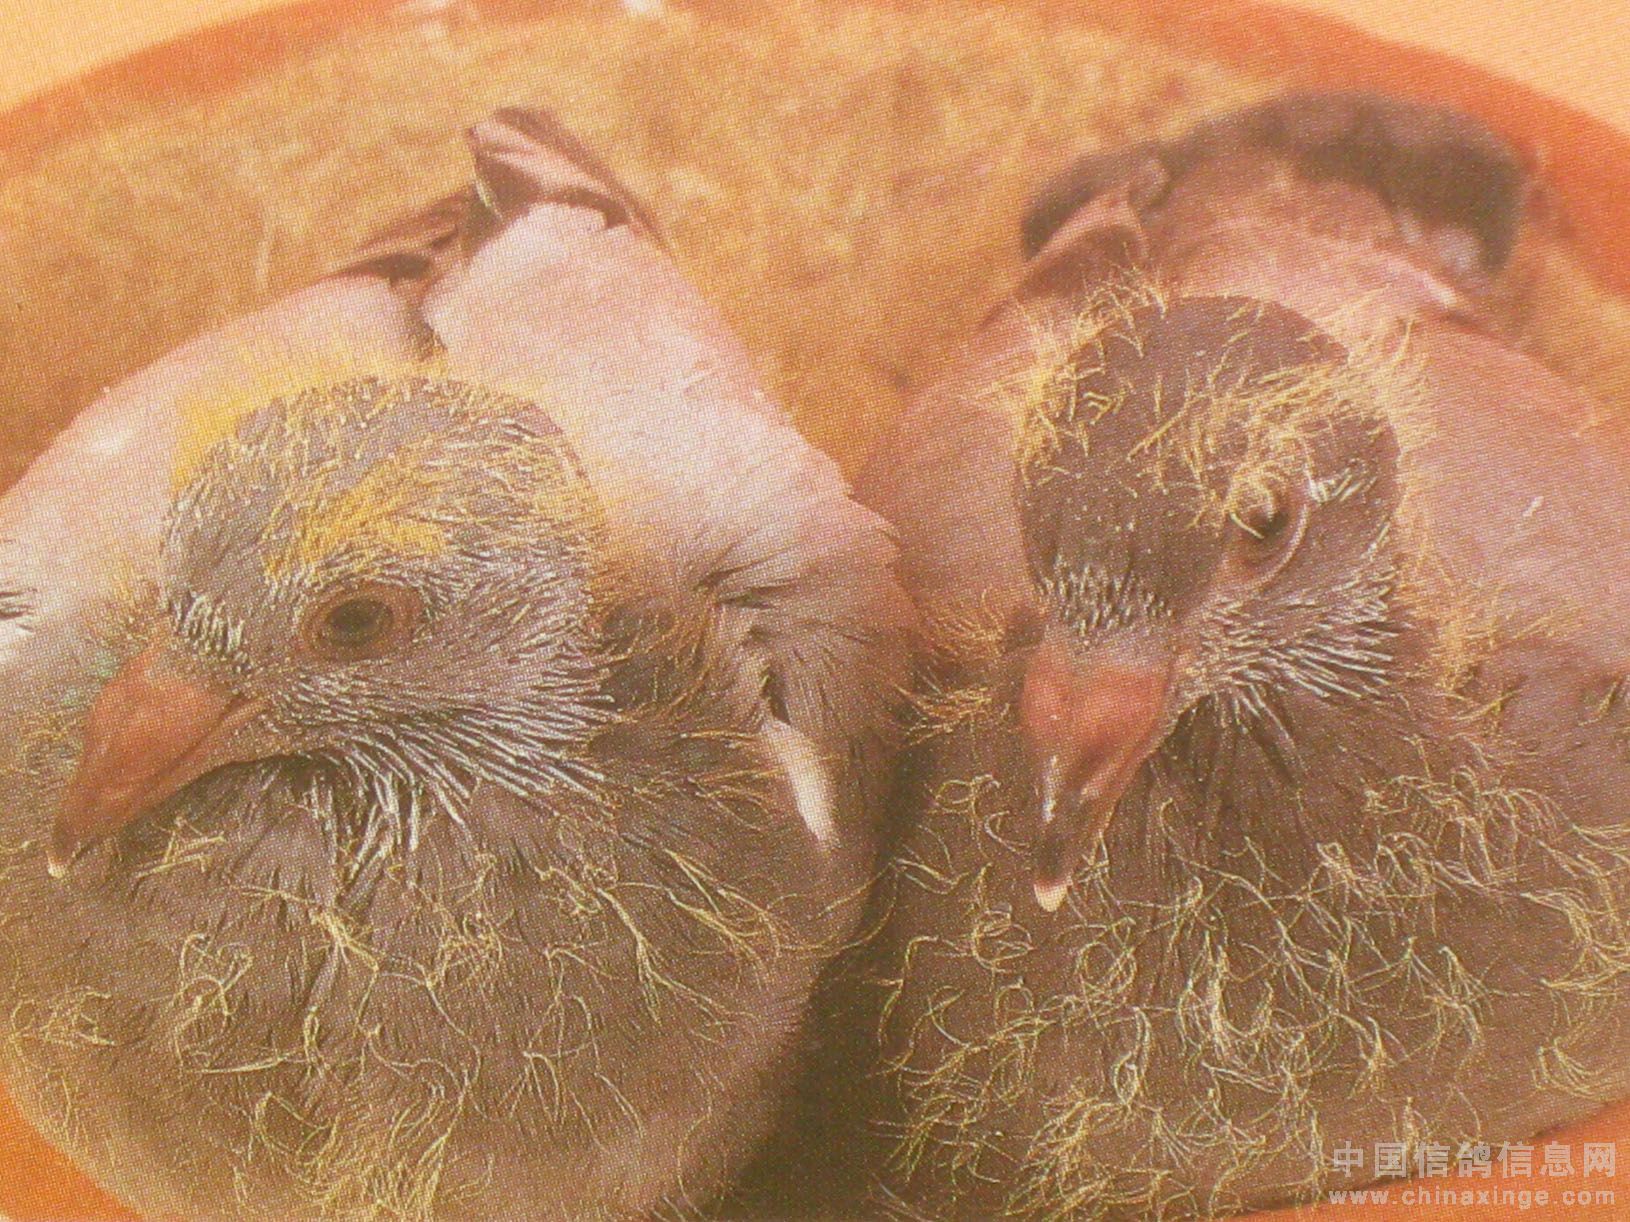 在巢穴里出生的白粉红嘴鸟 库存图片. 图片 包括有 野生生物, 婴孩, 结构树, 绿色, 澳洲, 敌意 - 206554387